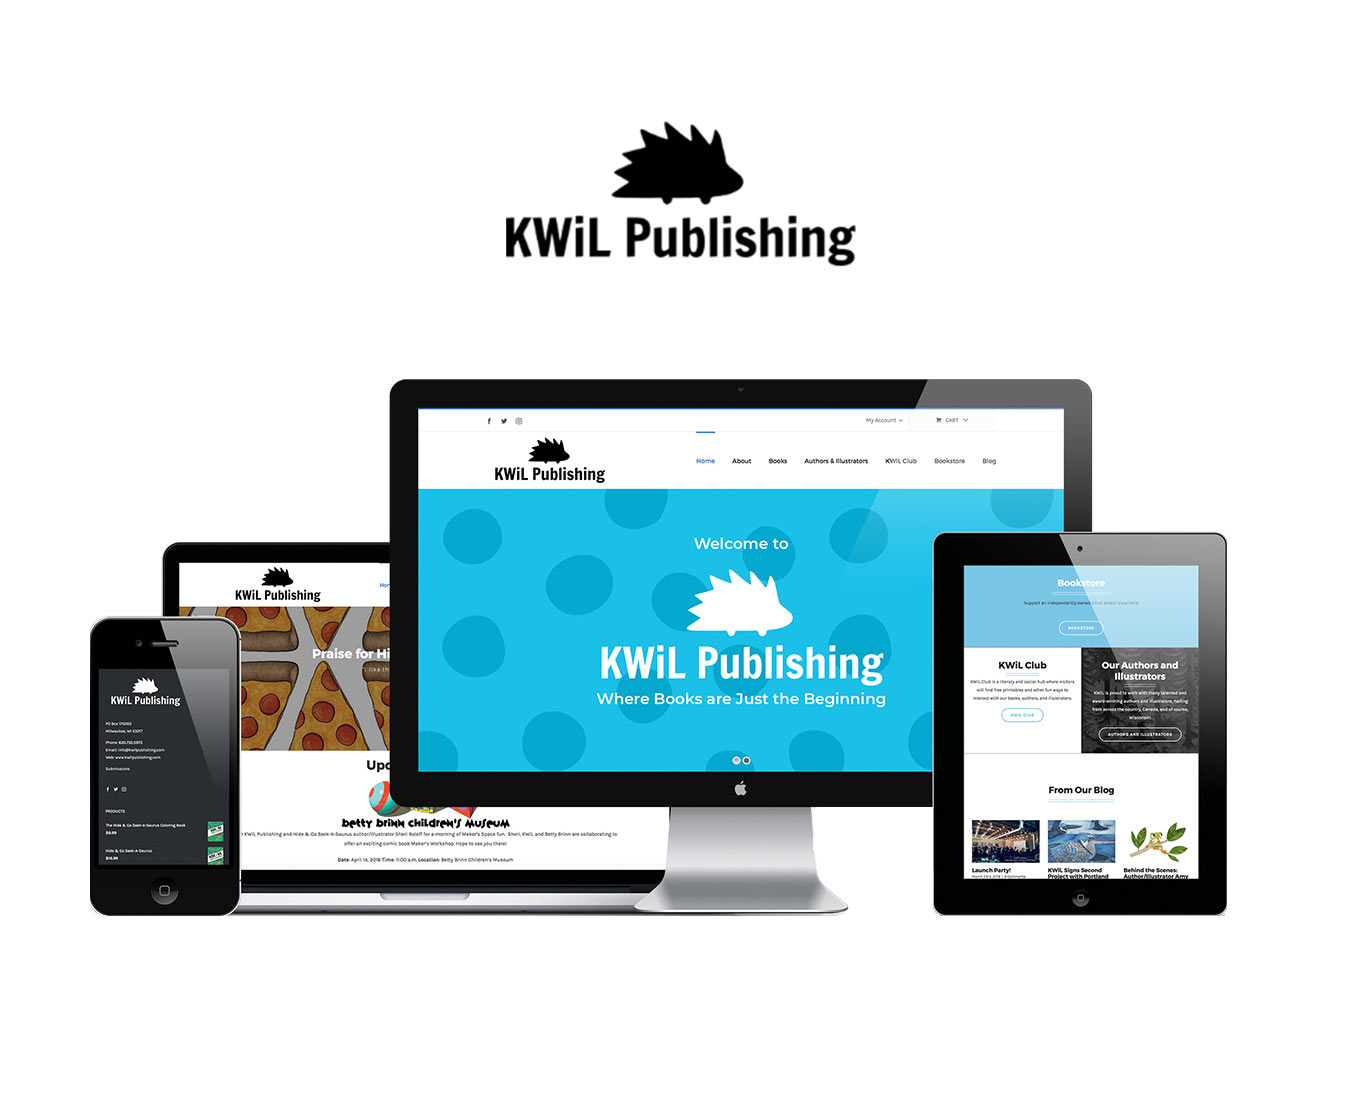 KWiL Publishing